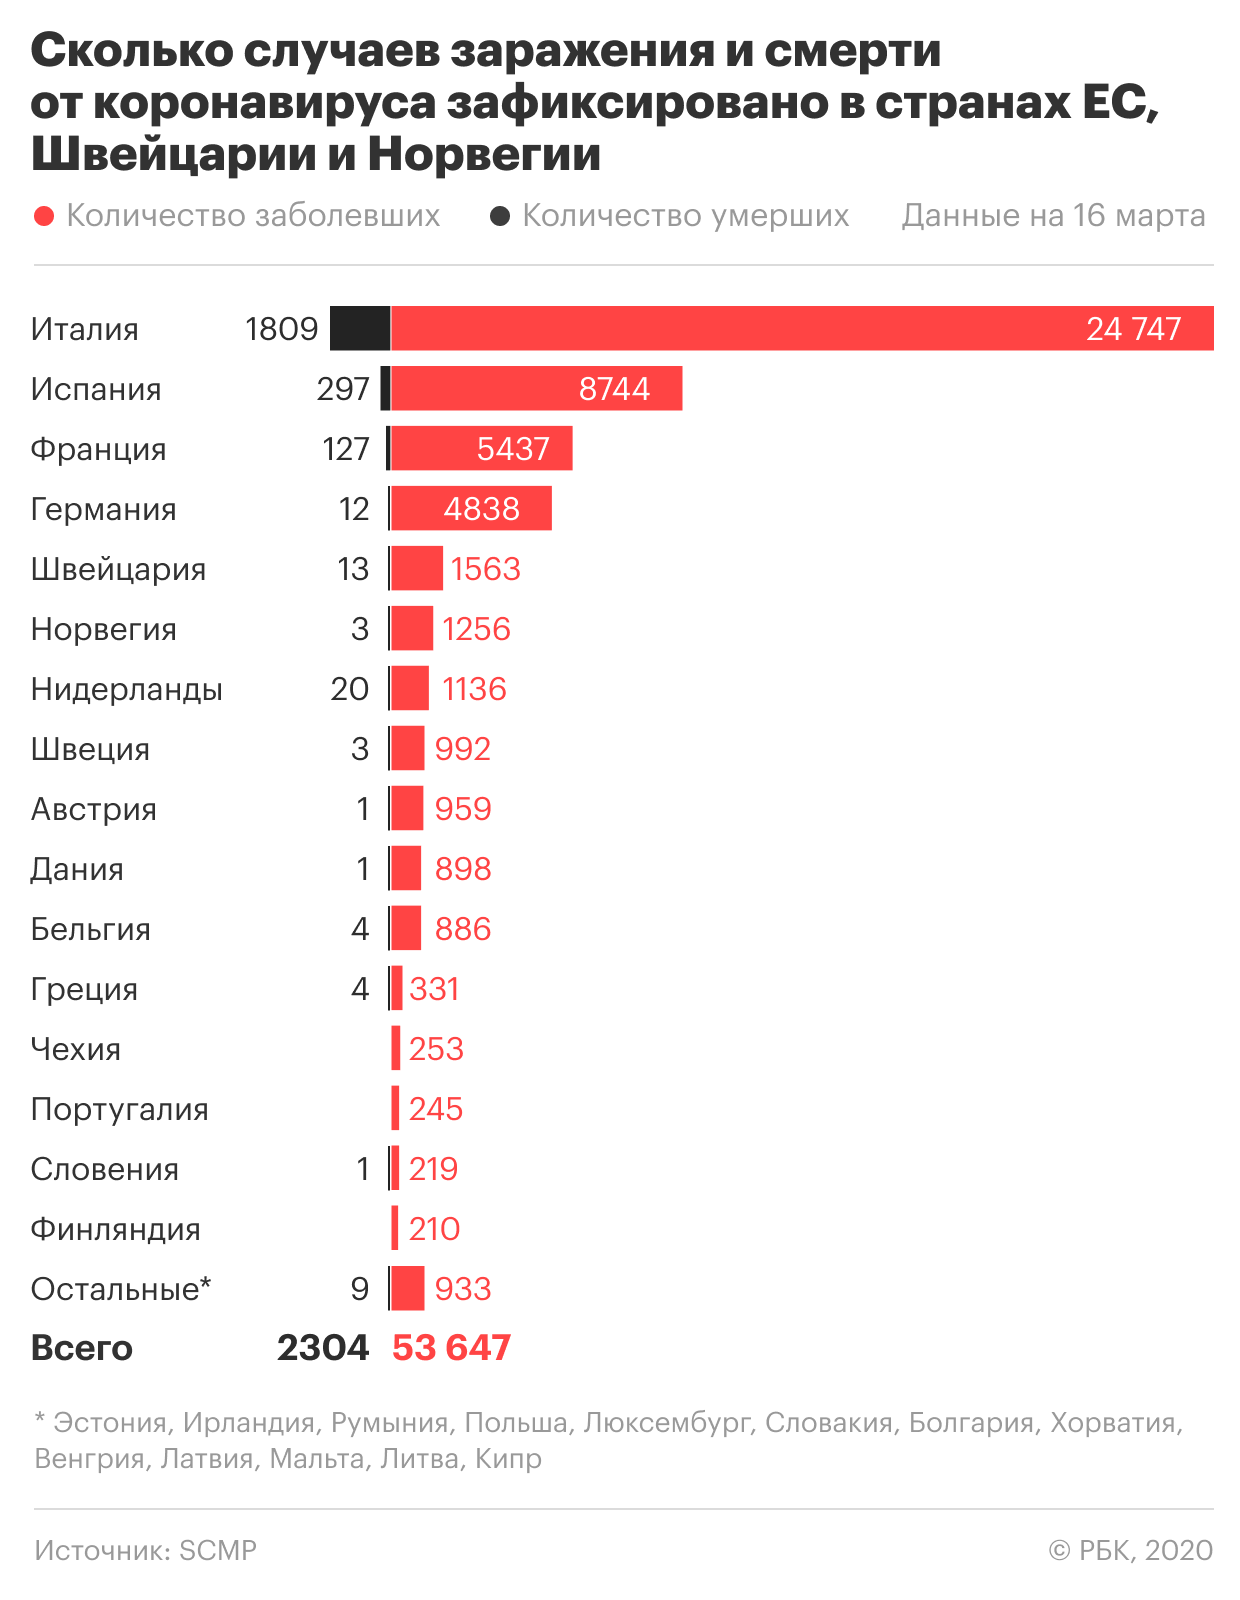 Европа стала главным очагом коронавируса. Сценарии развития пандемии